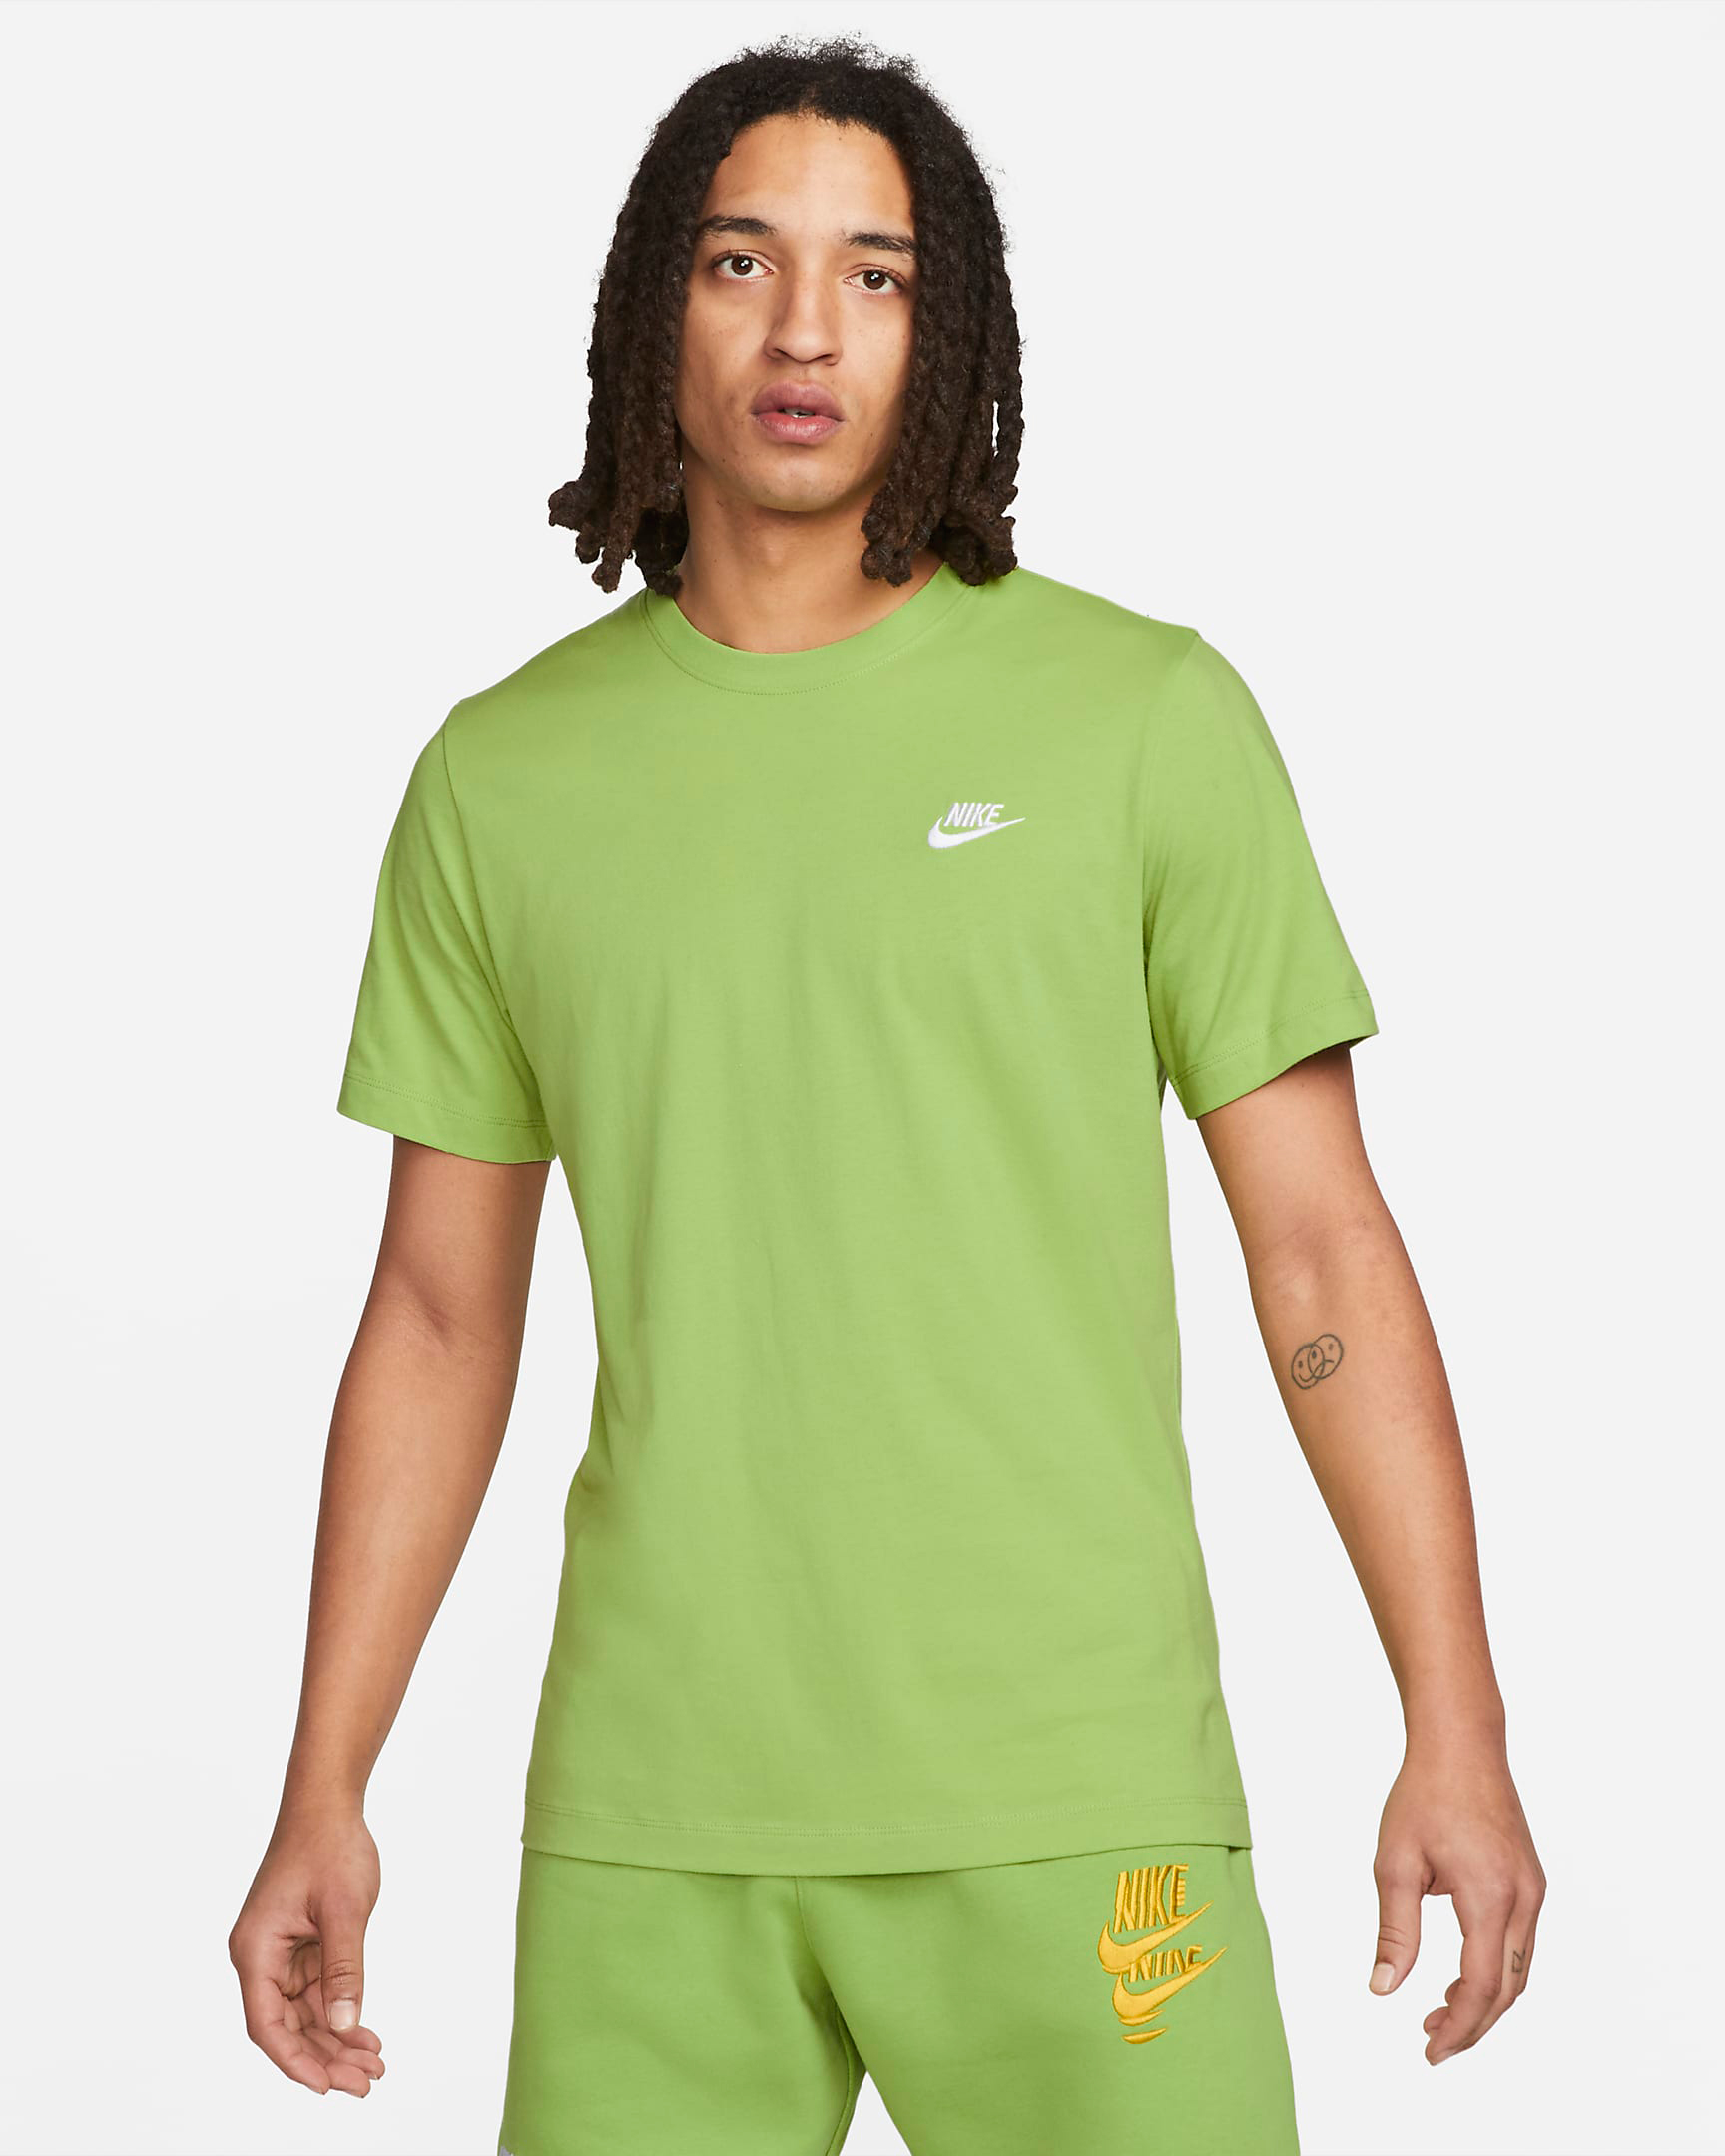 nike-vivid-green-club-t-shirt